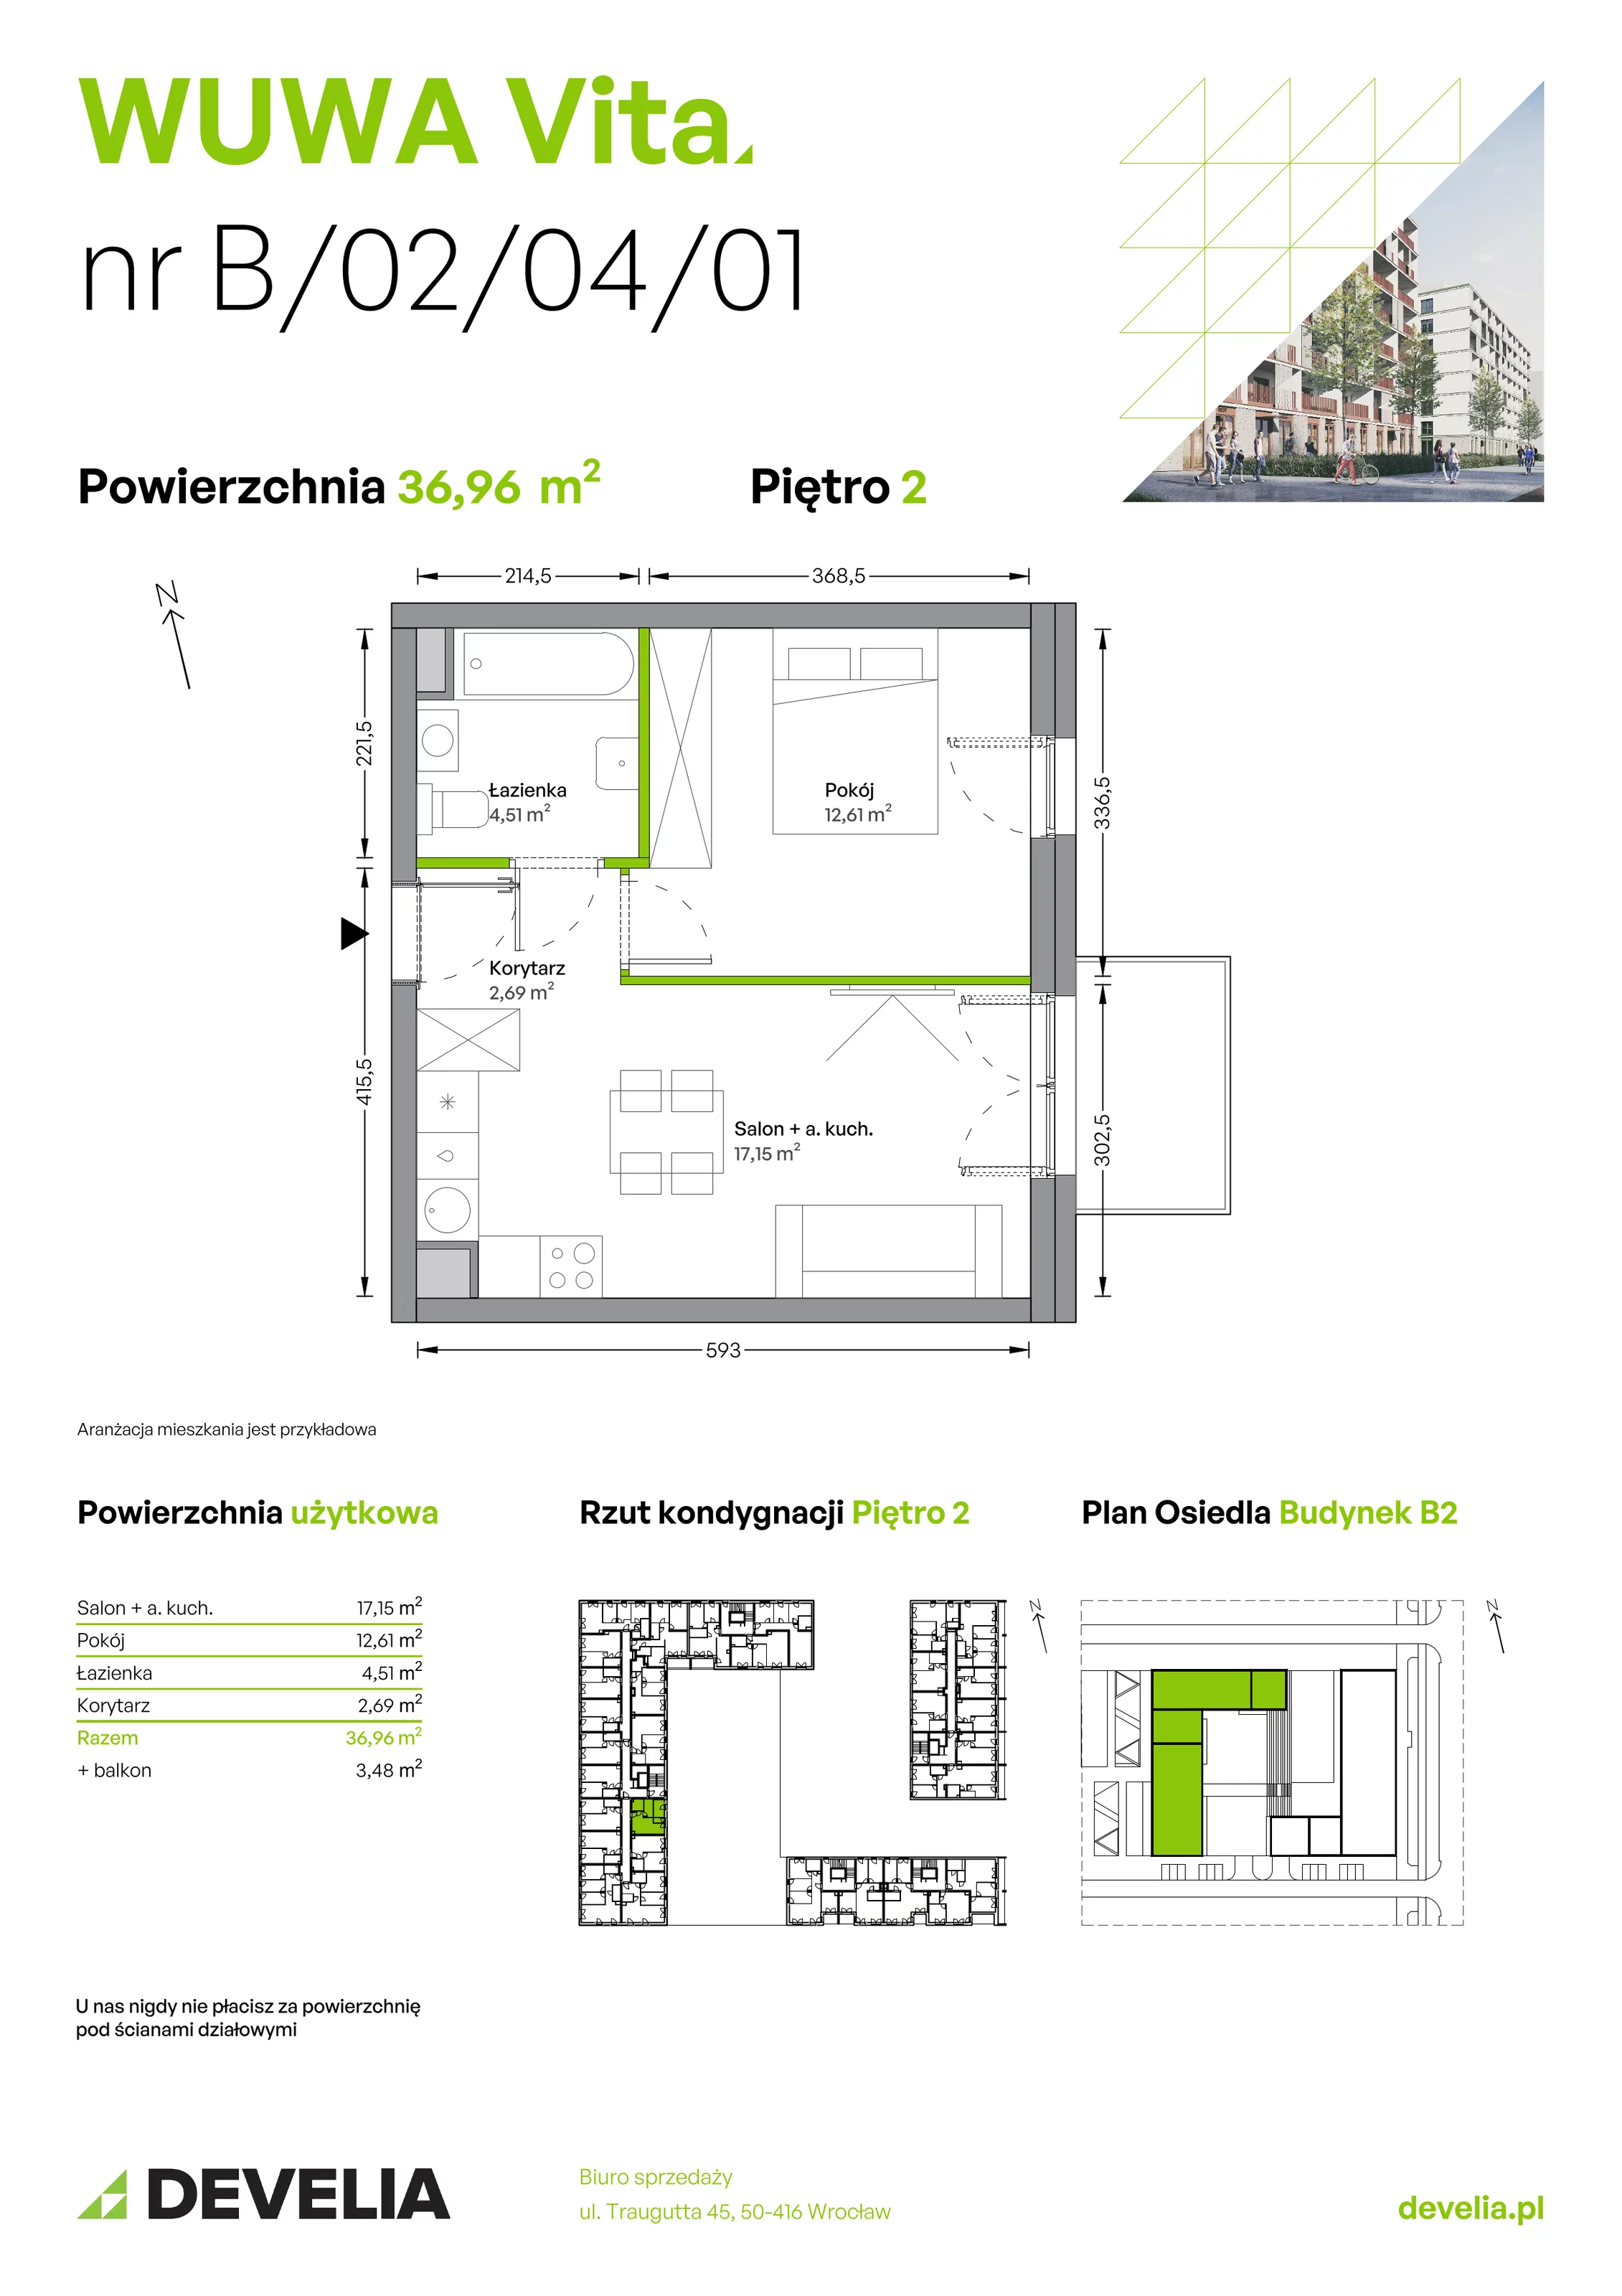 Mieszkanie 36,96 m², piętro 2, oferta nr B.02.04.01, WUWA Vita, Wrocław, Żerniki, Fabryczna, ul. Tadeusza Brzozy